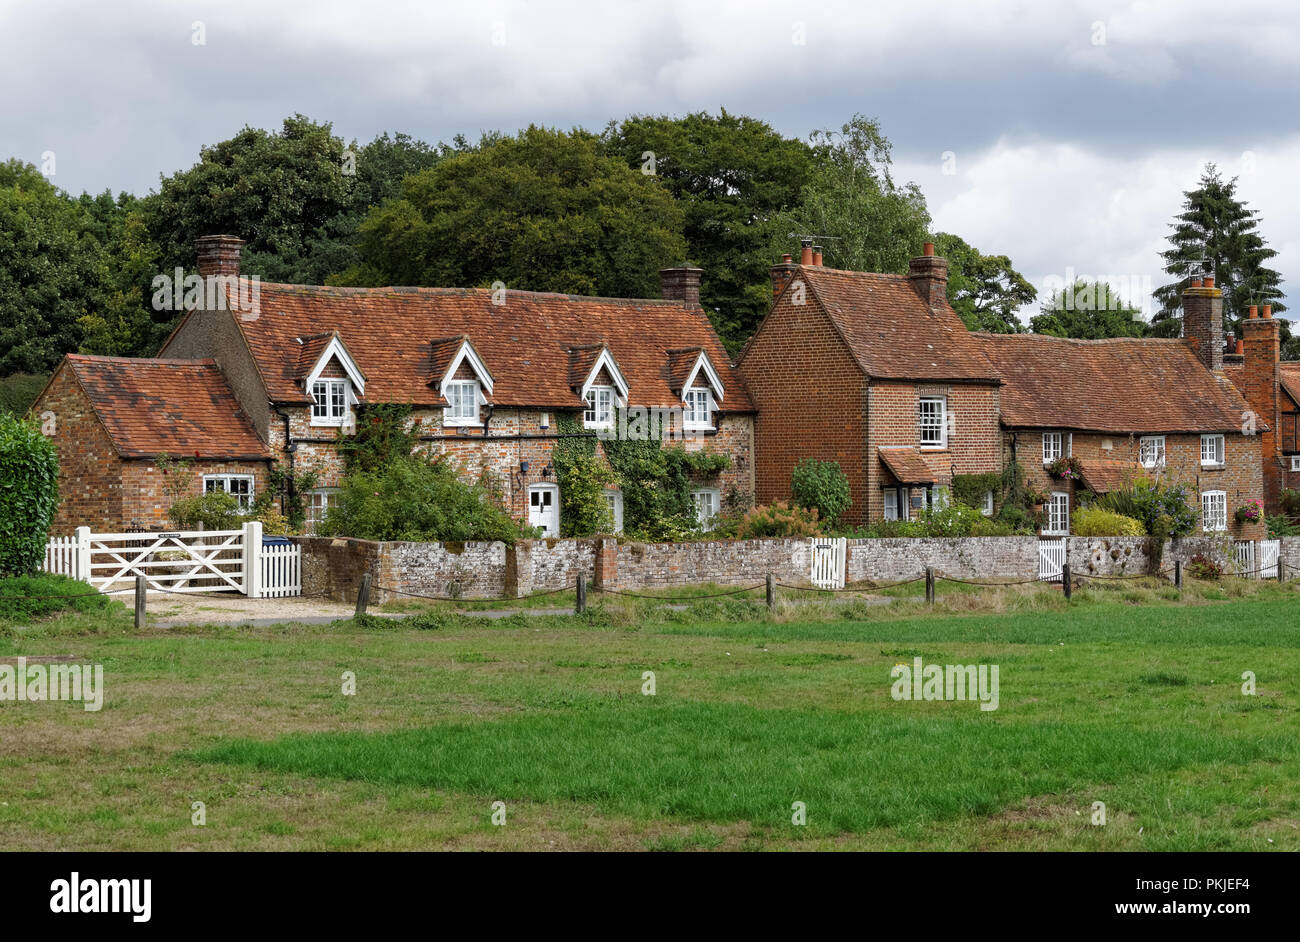 Häuser in der Lee Dorf in der Chiltern Hills, Buckinghamshire, England Vereinigtes Königreich Großbritannien Stockfoto